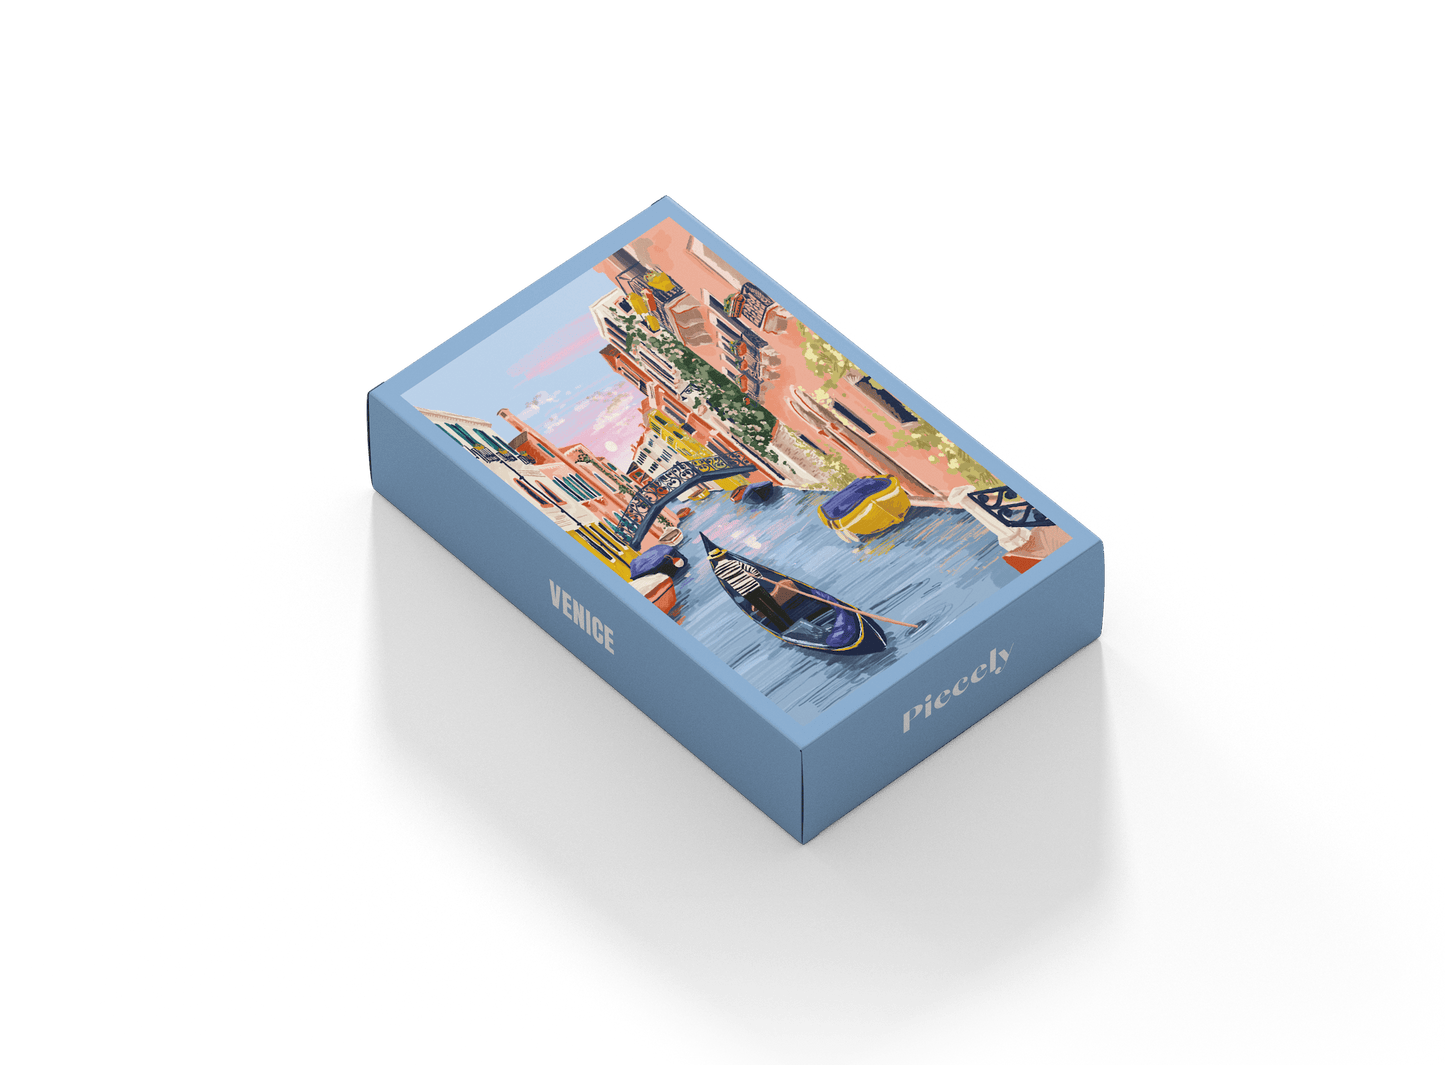 99-teiliges Minipuzzle für Erwachsene, das eine Gondola auf den Kanälen von Venedig zeigt.